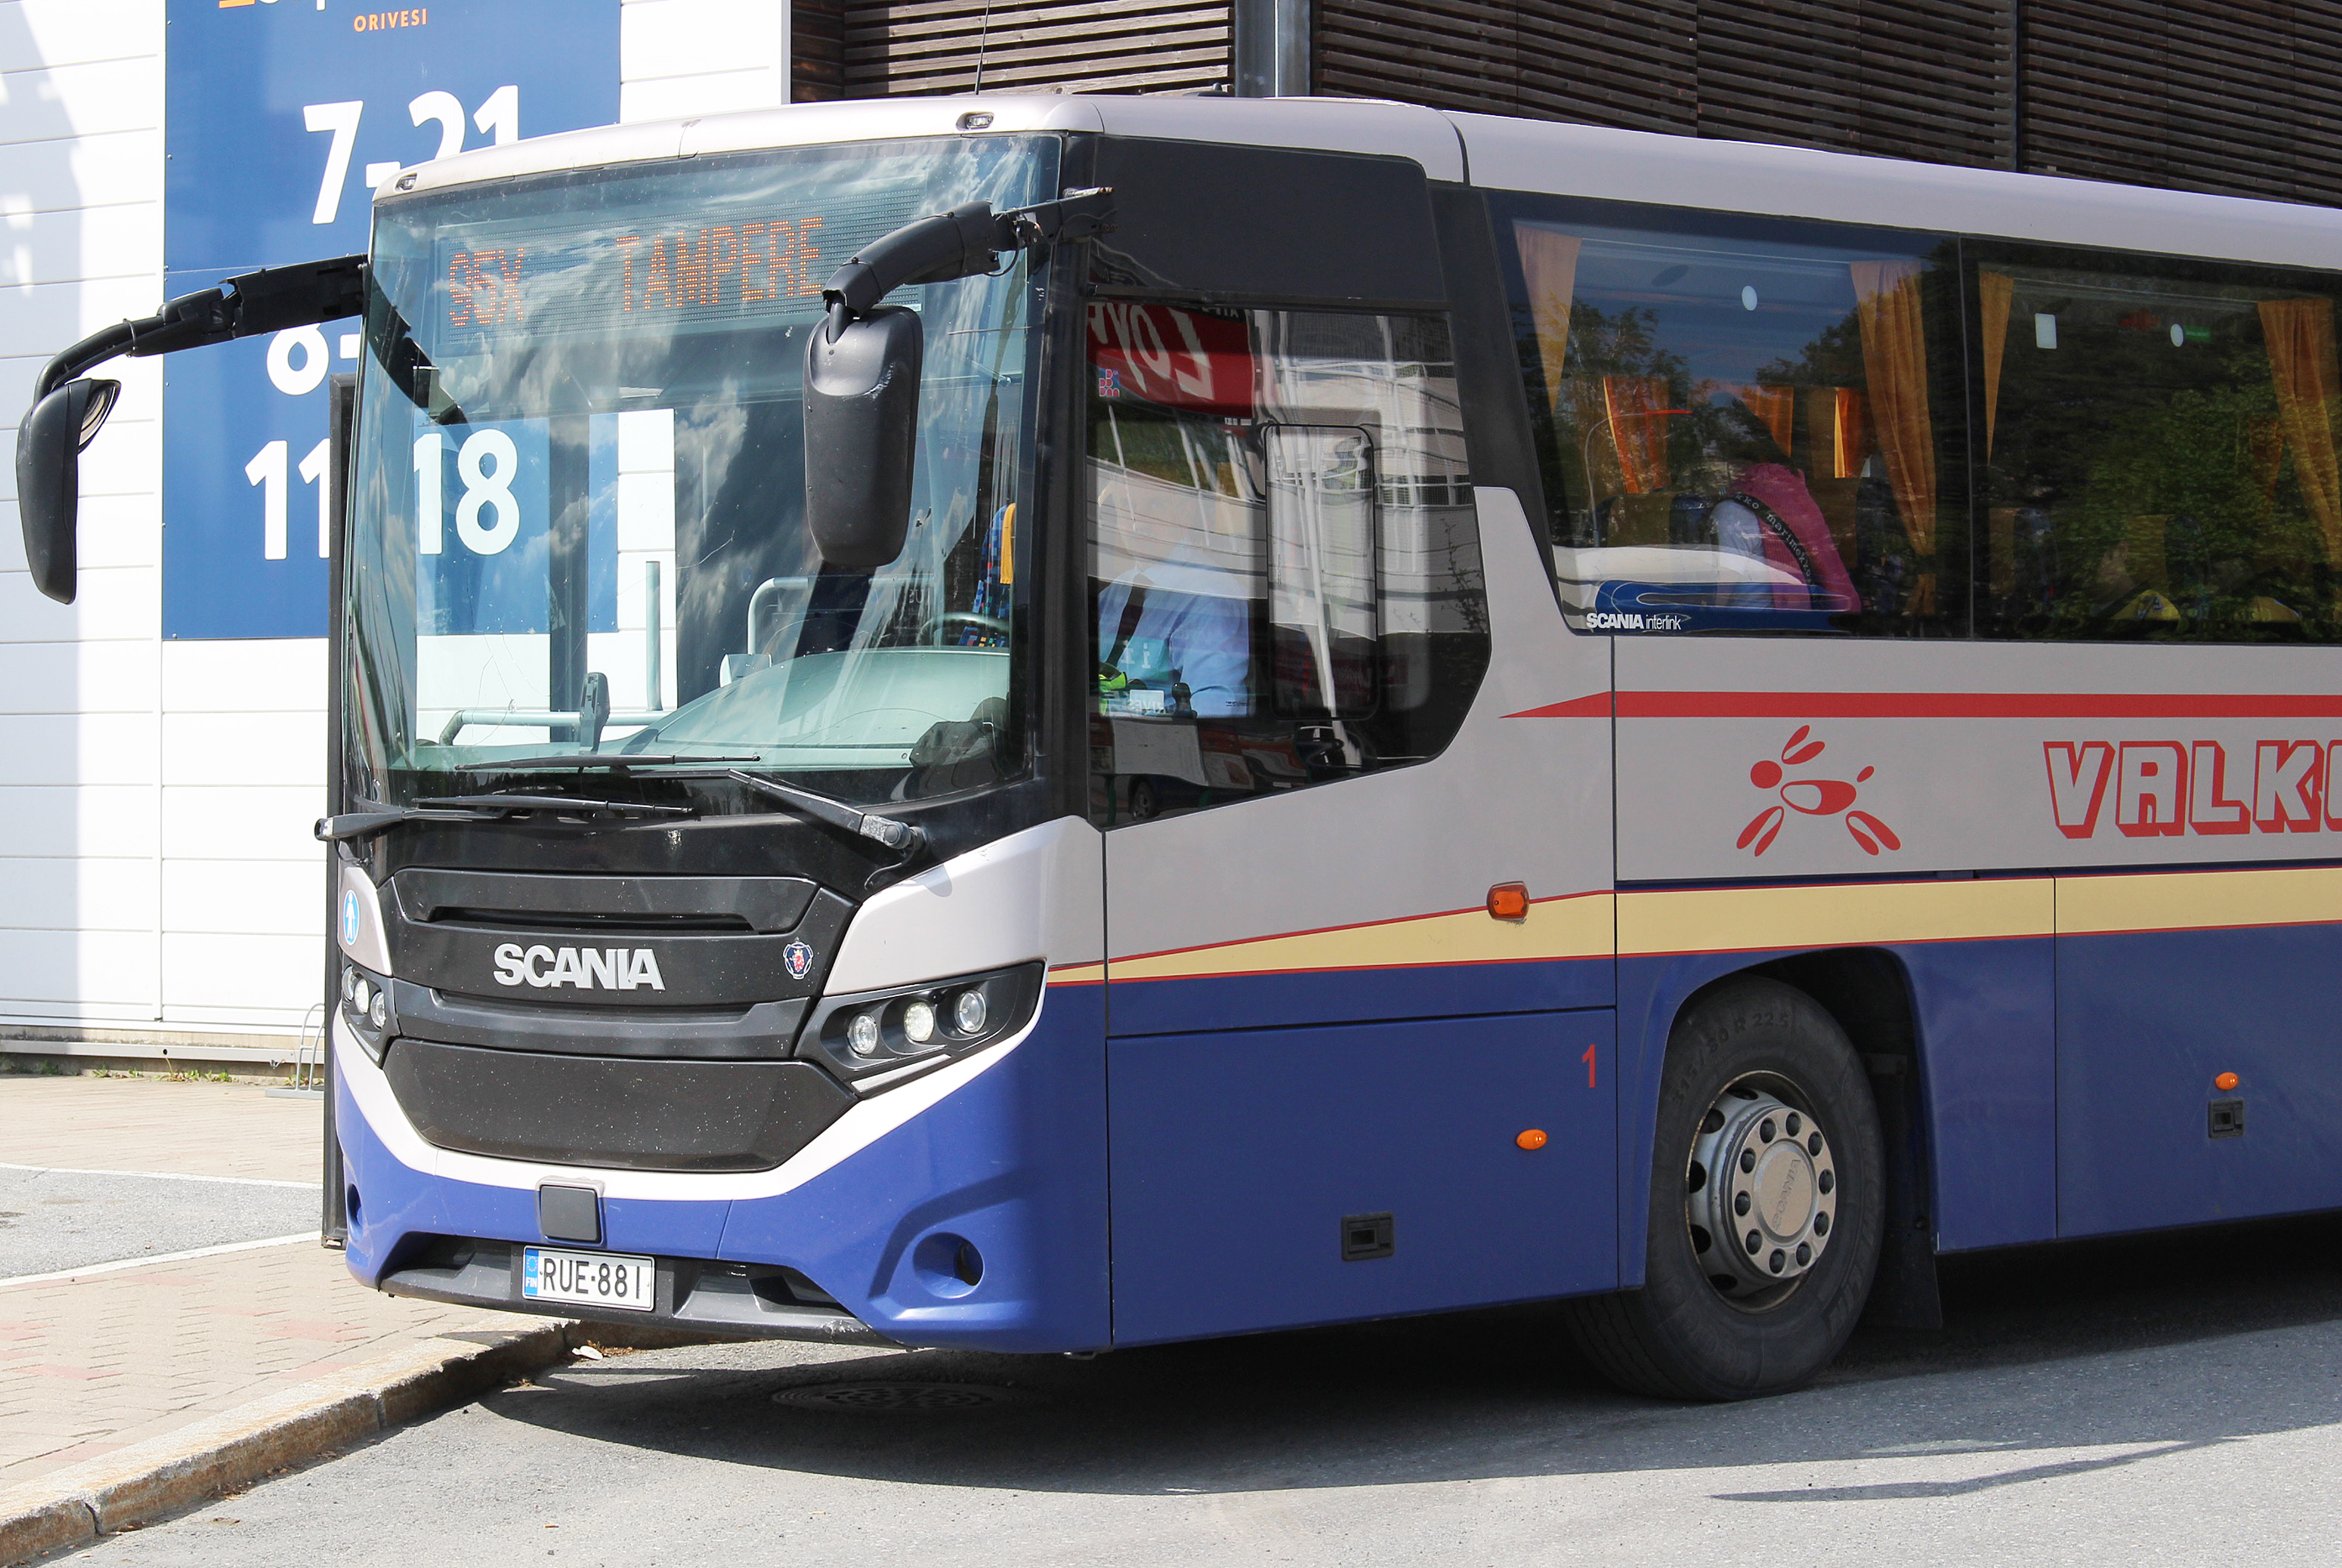 Nyssen 95X-linjan liikennettä liikennöivä Valkeakosken liikenteen bussi.